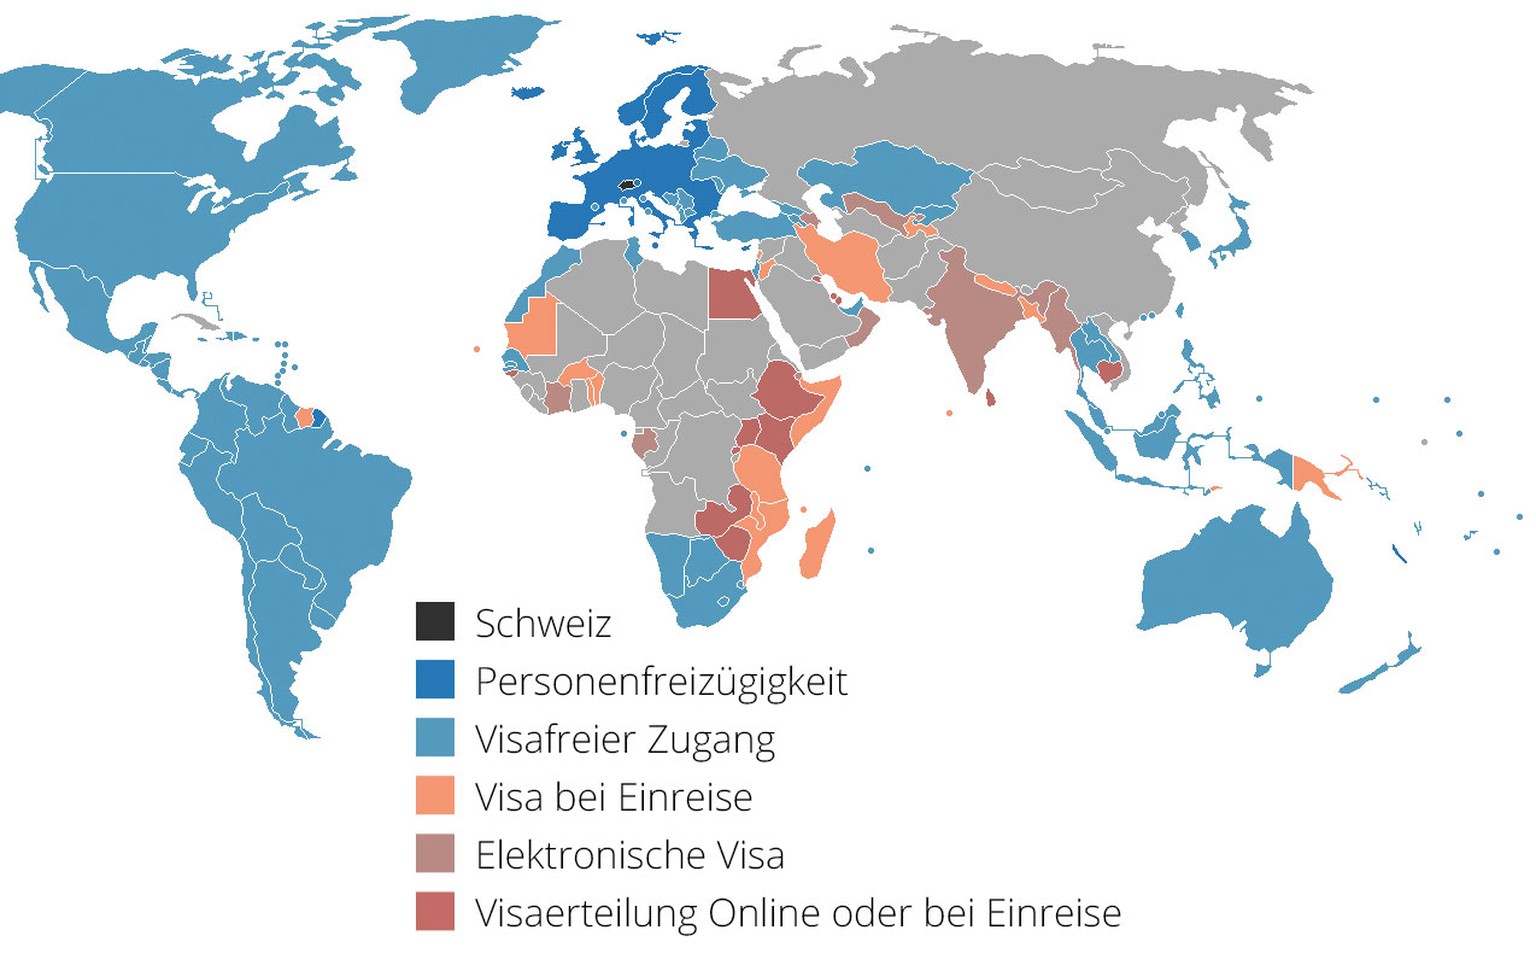 Visafreier Zugang mit dem Schweizer Pass